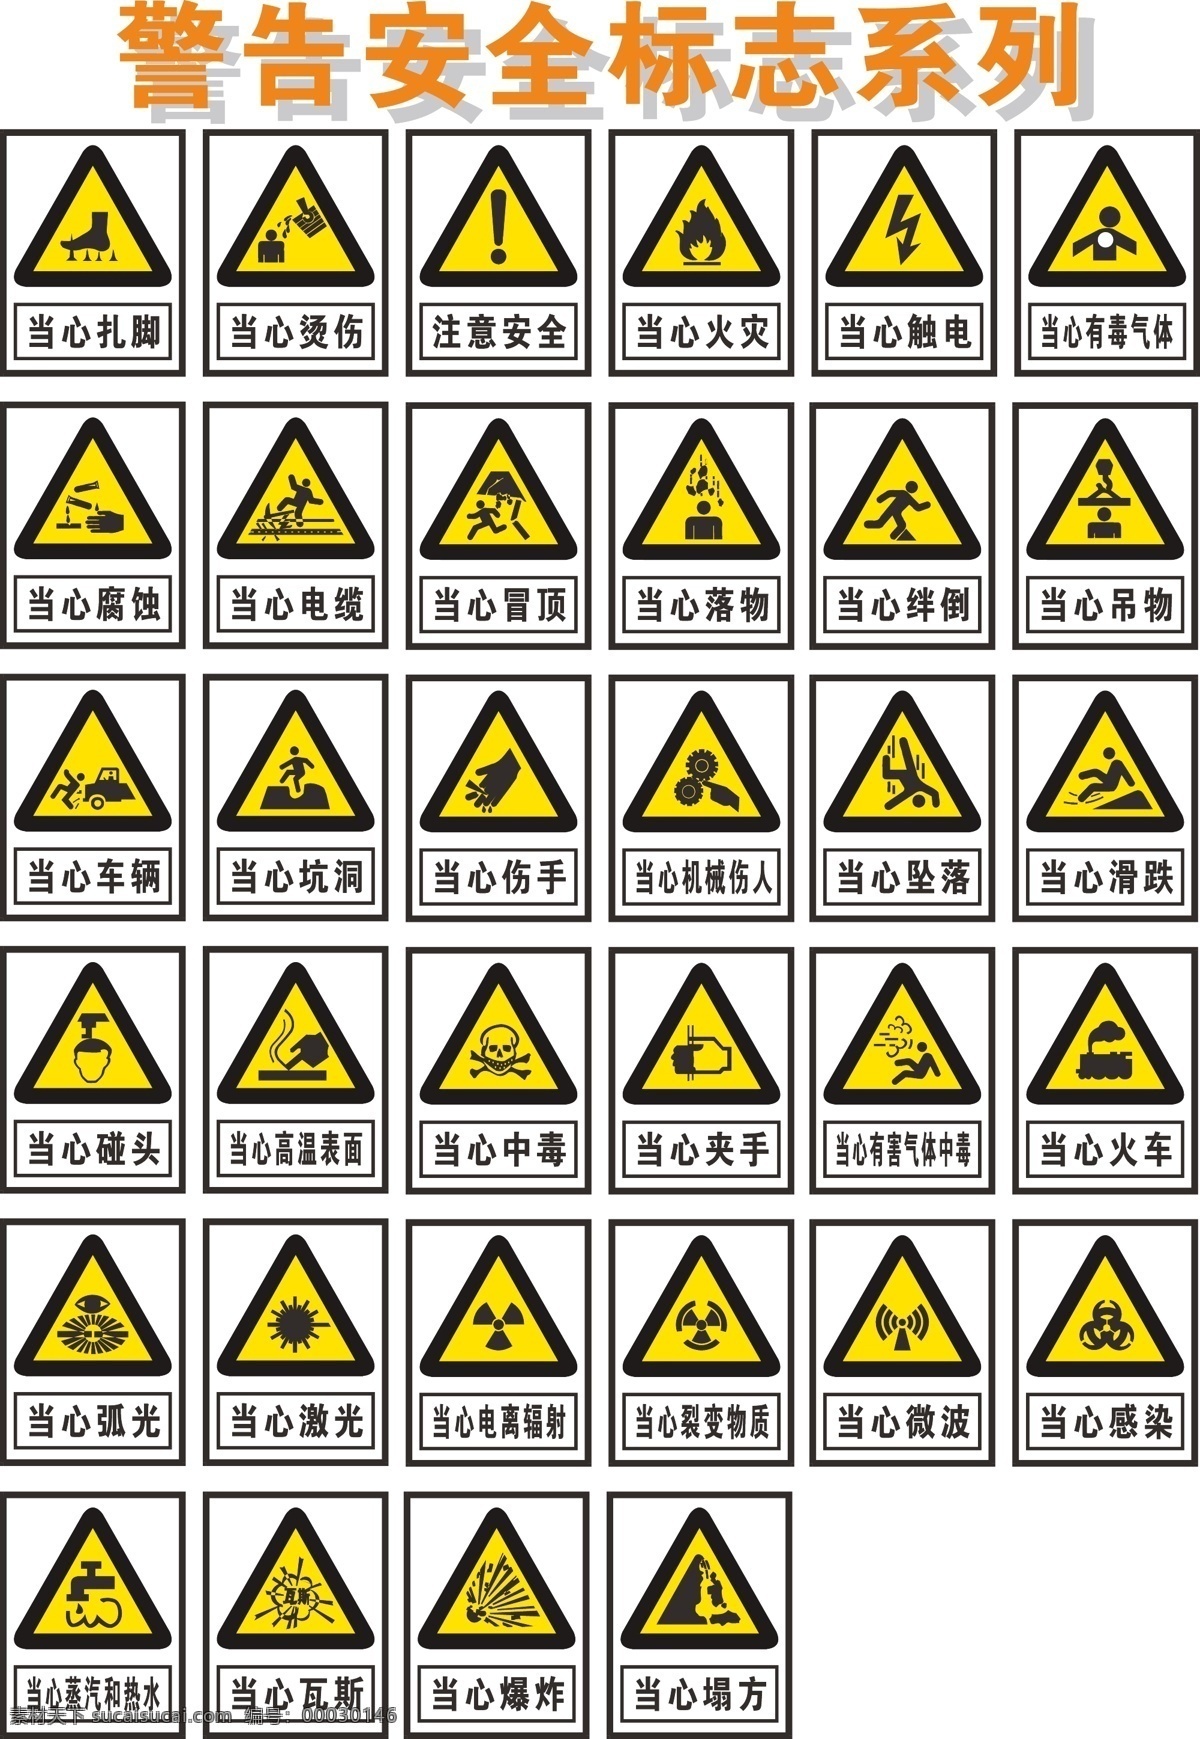 警告 安全 标志 系列 警 告 安 全 标 志 系 列 现代科技 交通工具